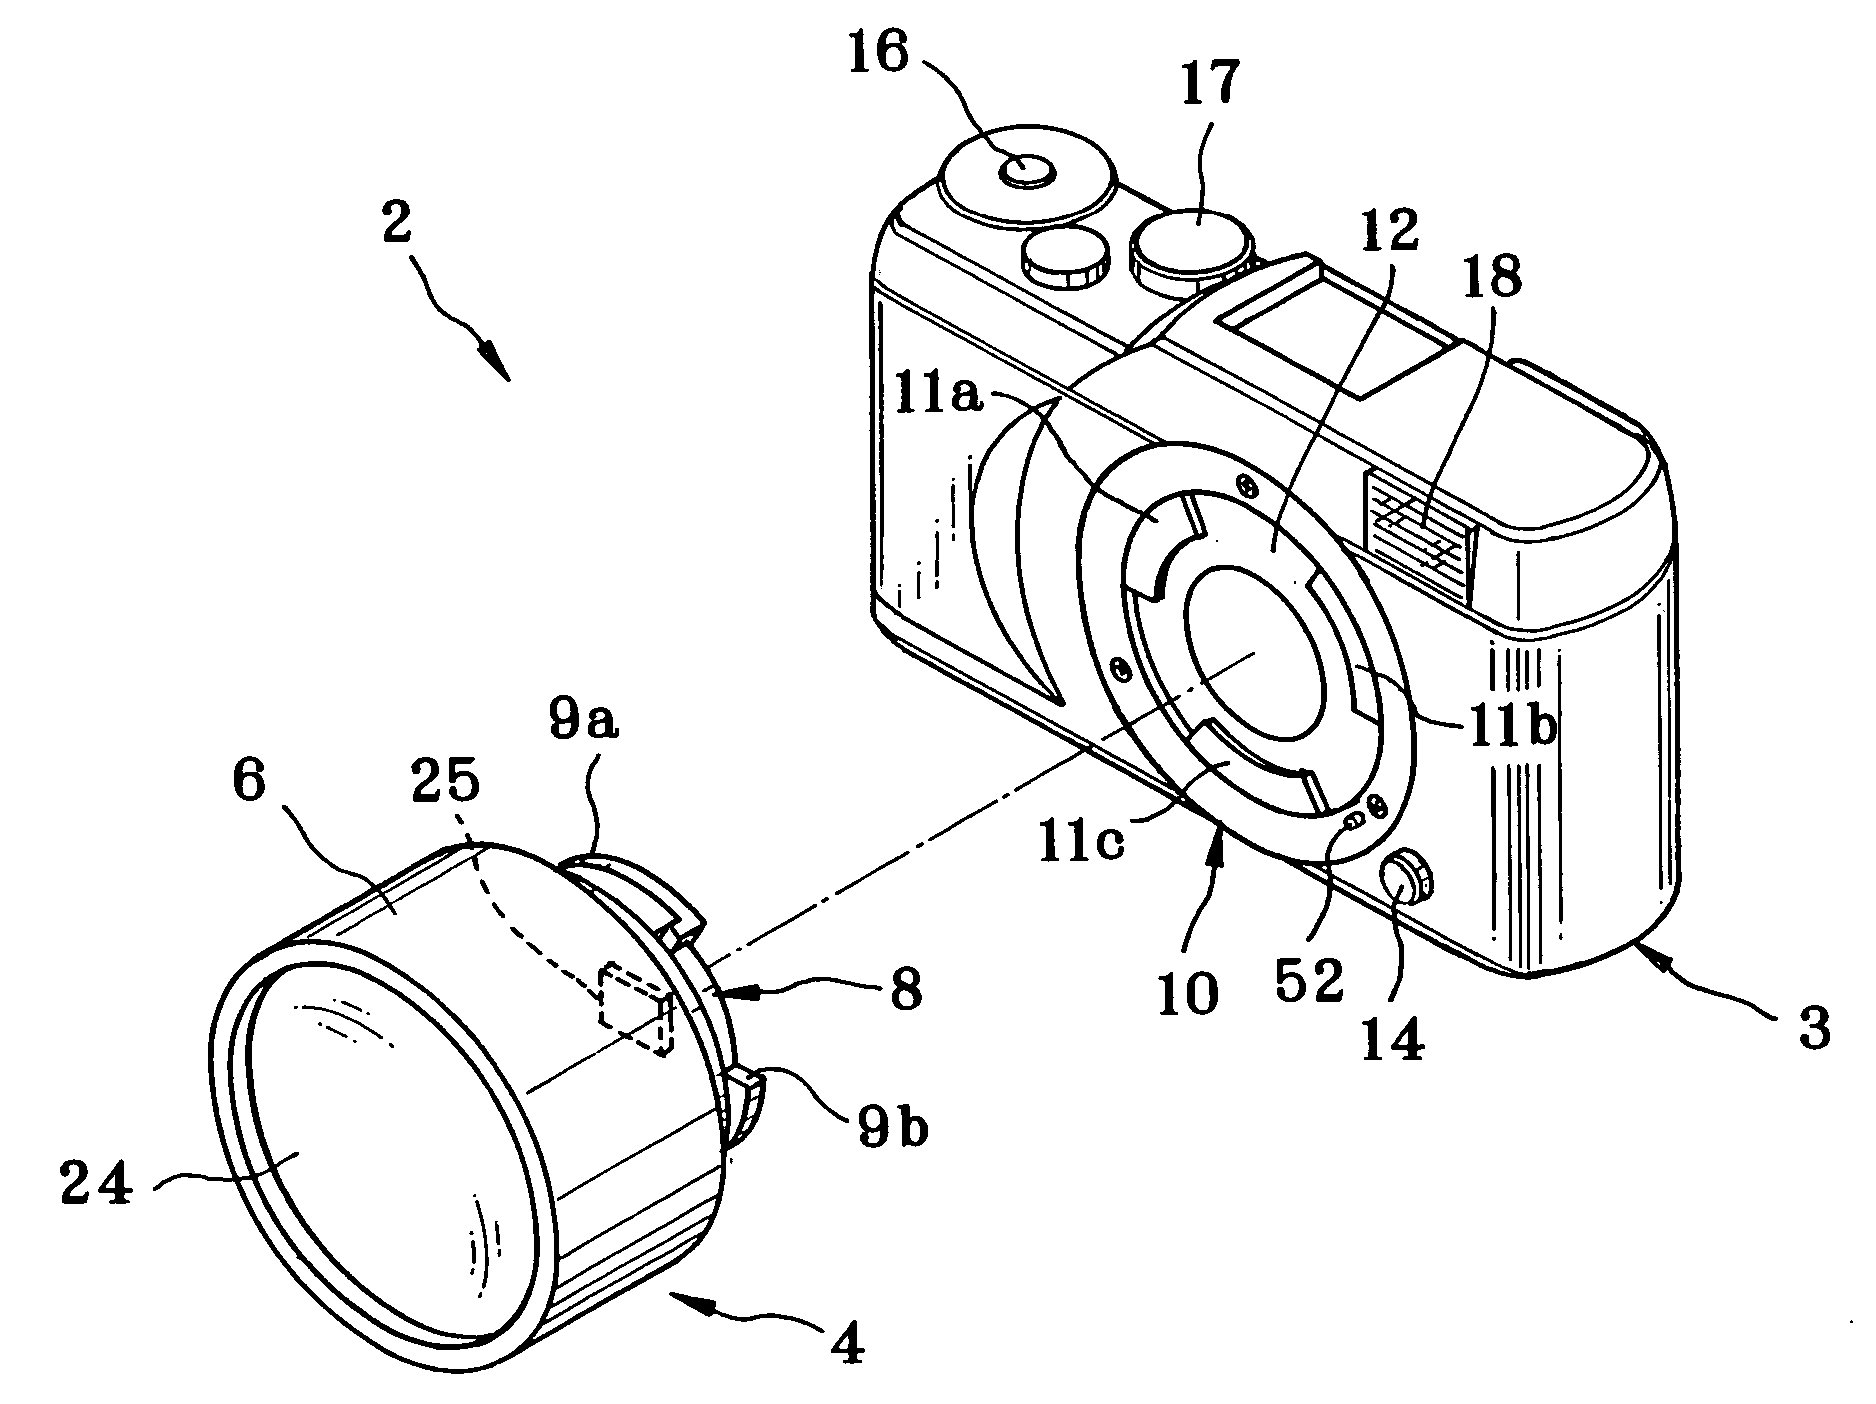 Digital camera, lens unit, and camera system having the same